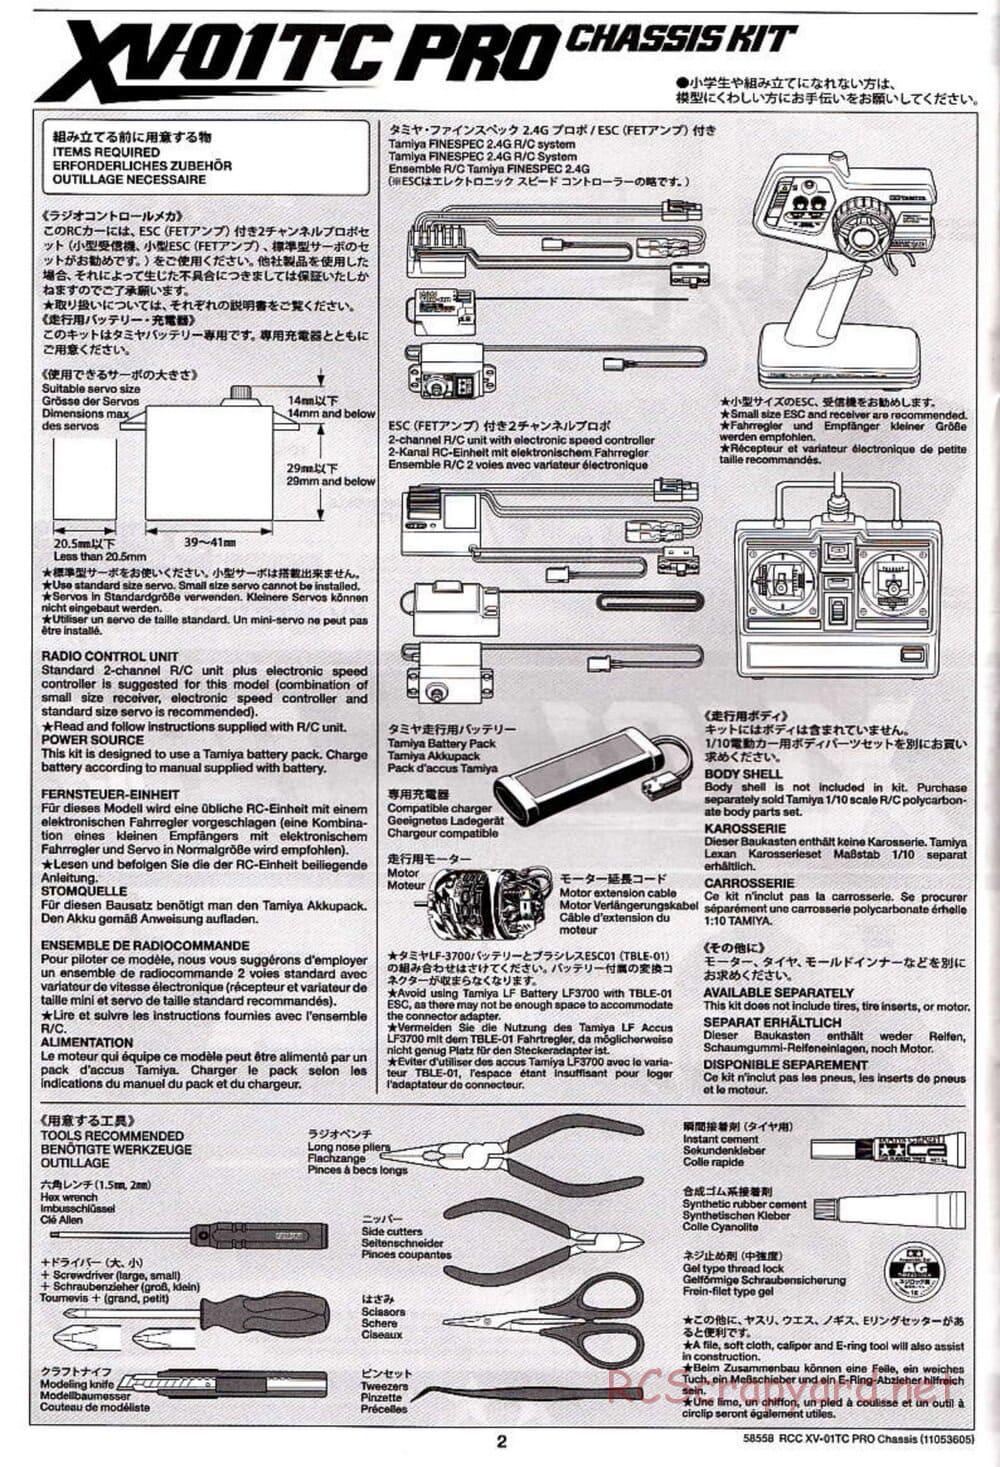 Tamiya - XV-01TC Chassis - Manual - Page 2